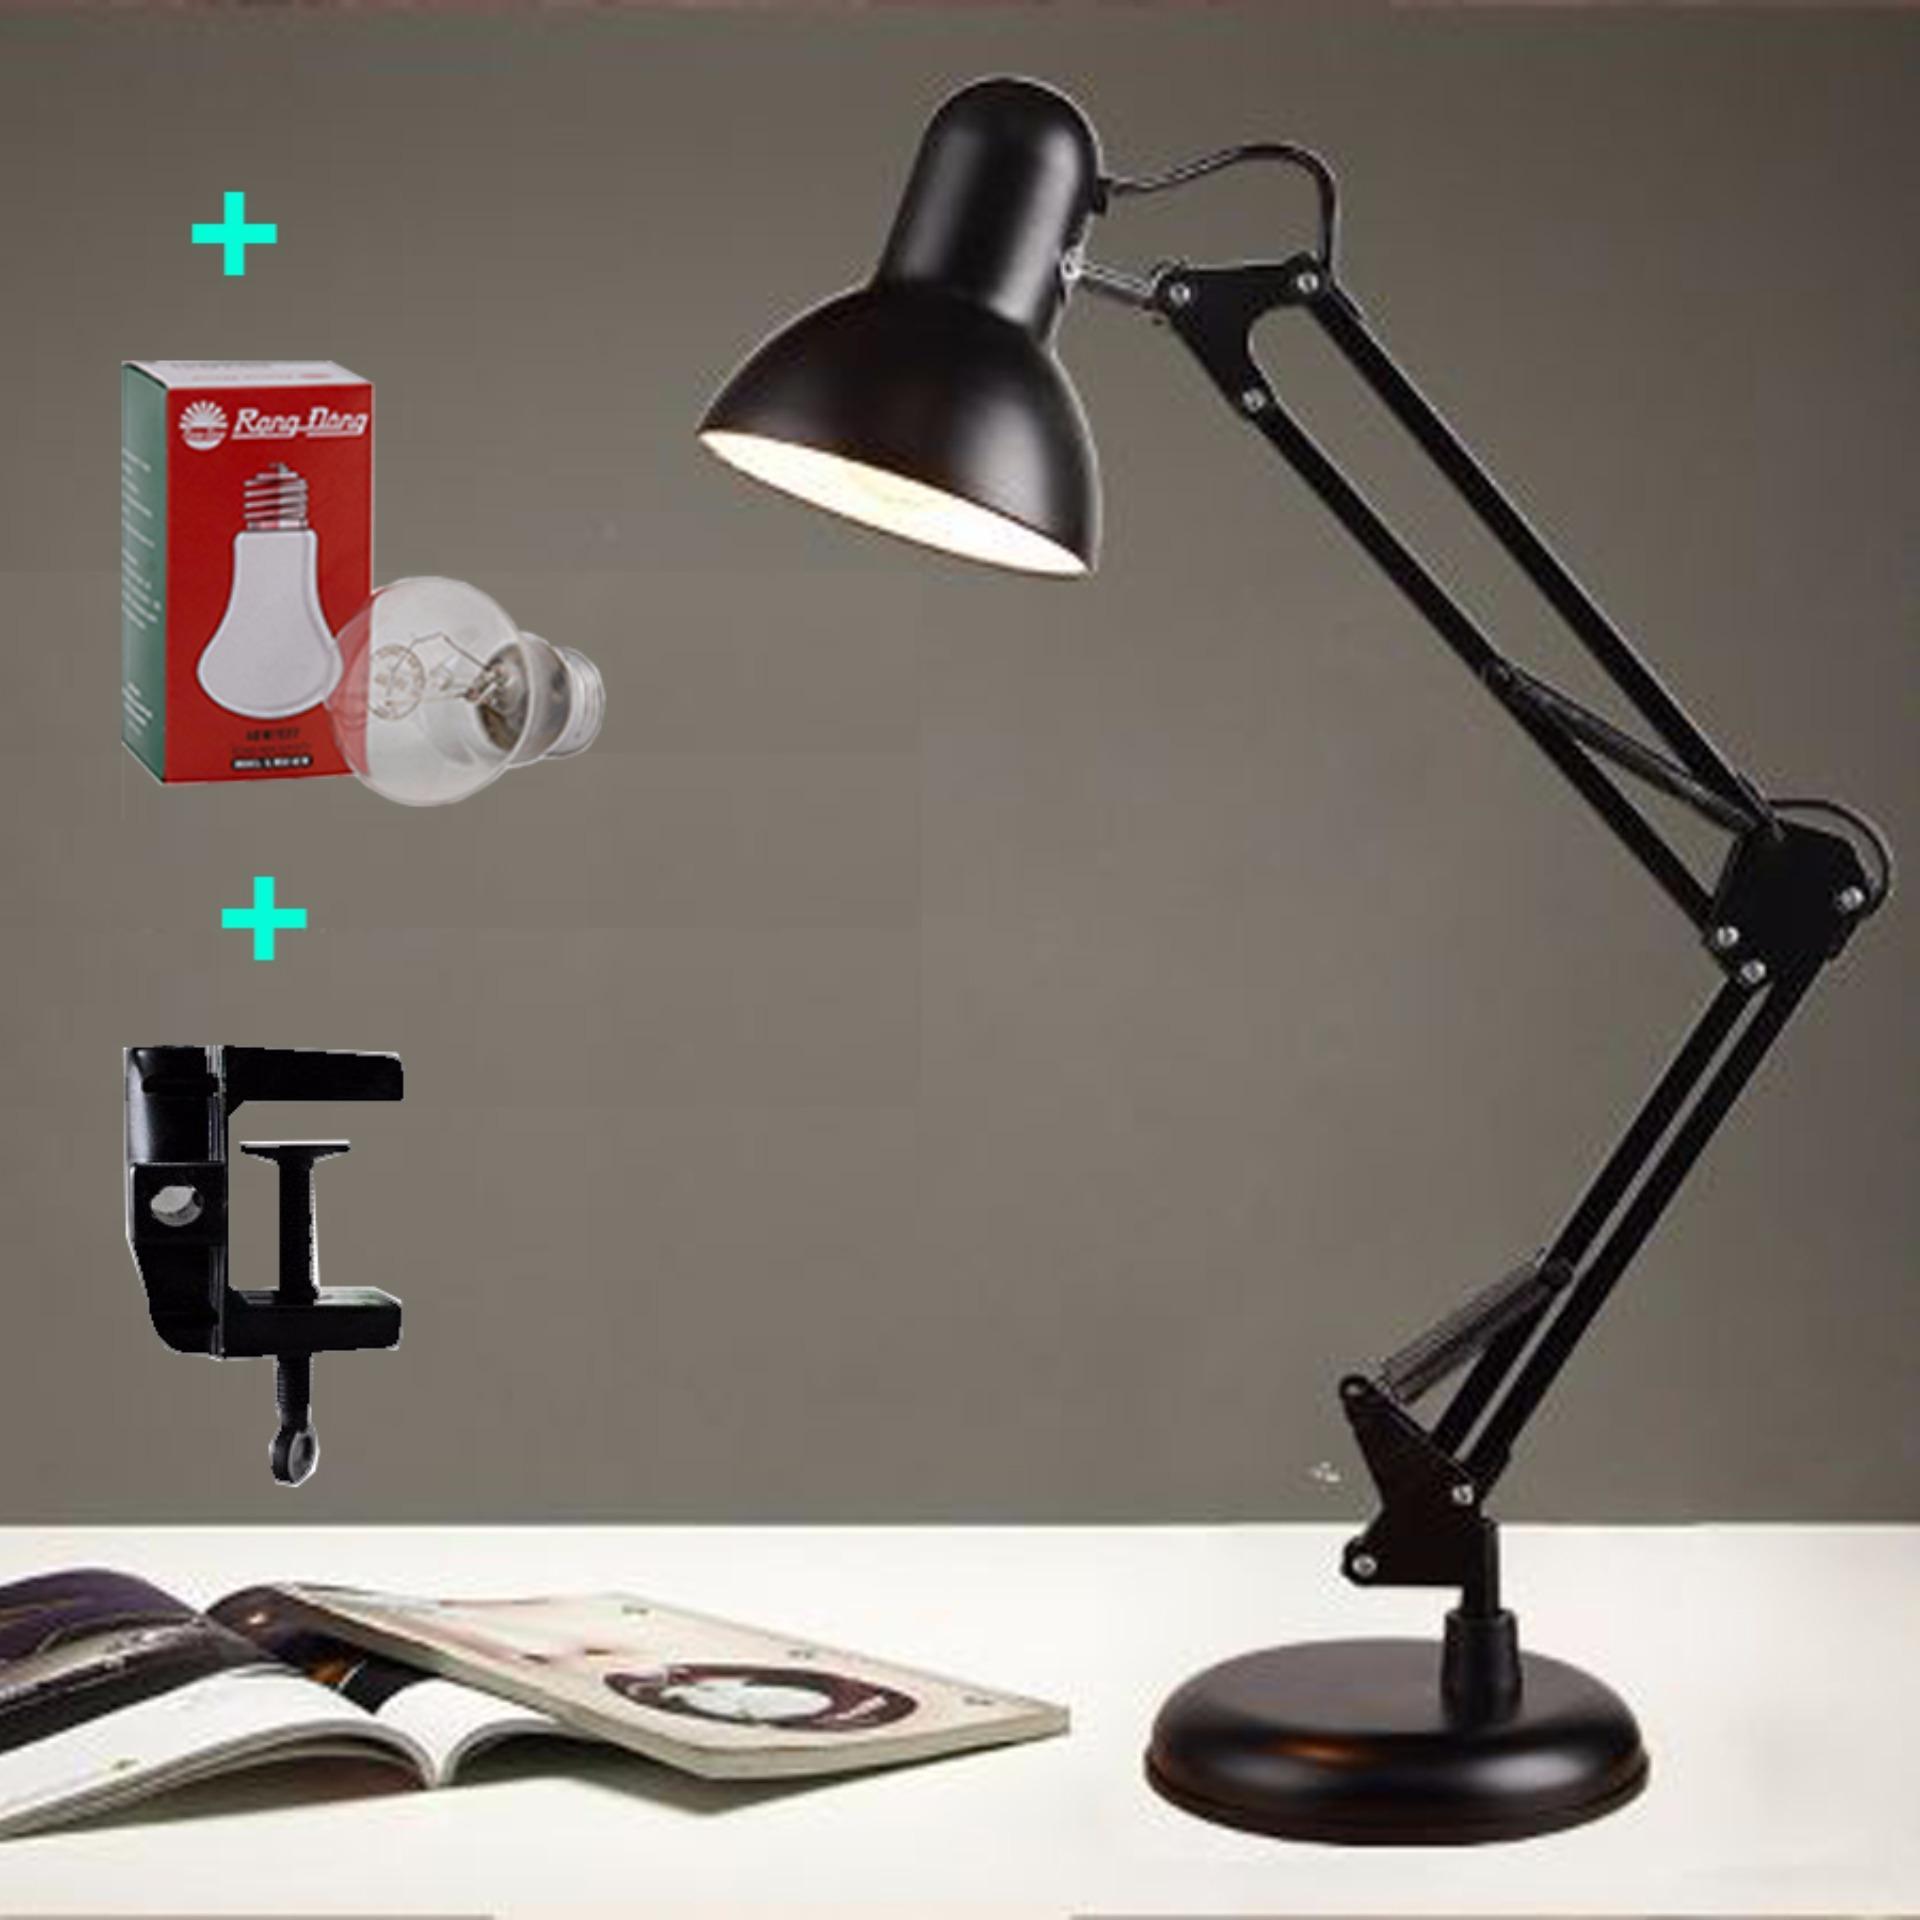 Đèn bàn pixar có đế tự đứng , đèn để bàn, đèn học chống cận kèm bóng và kẹp -...